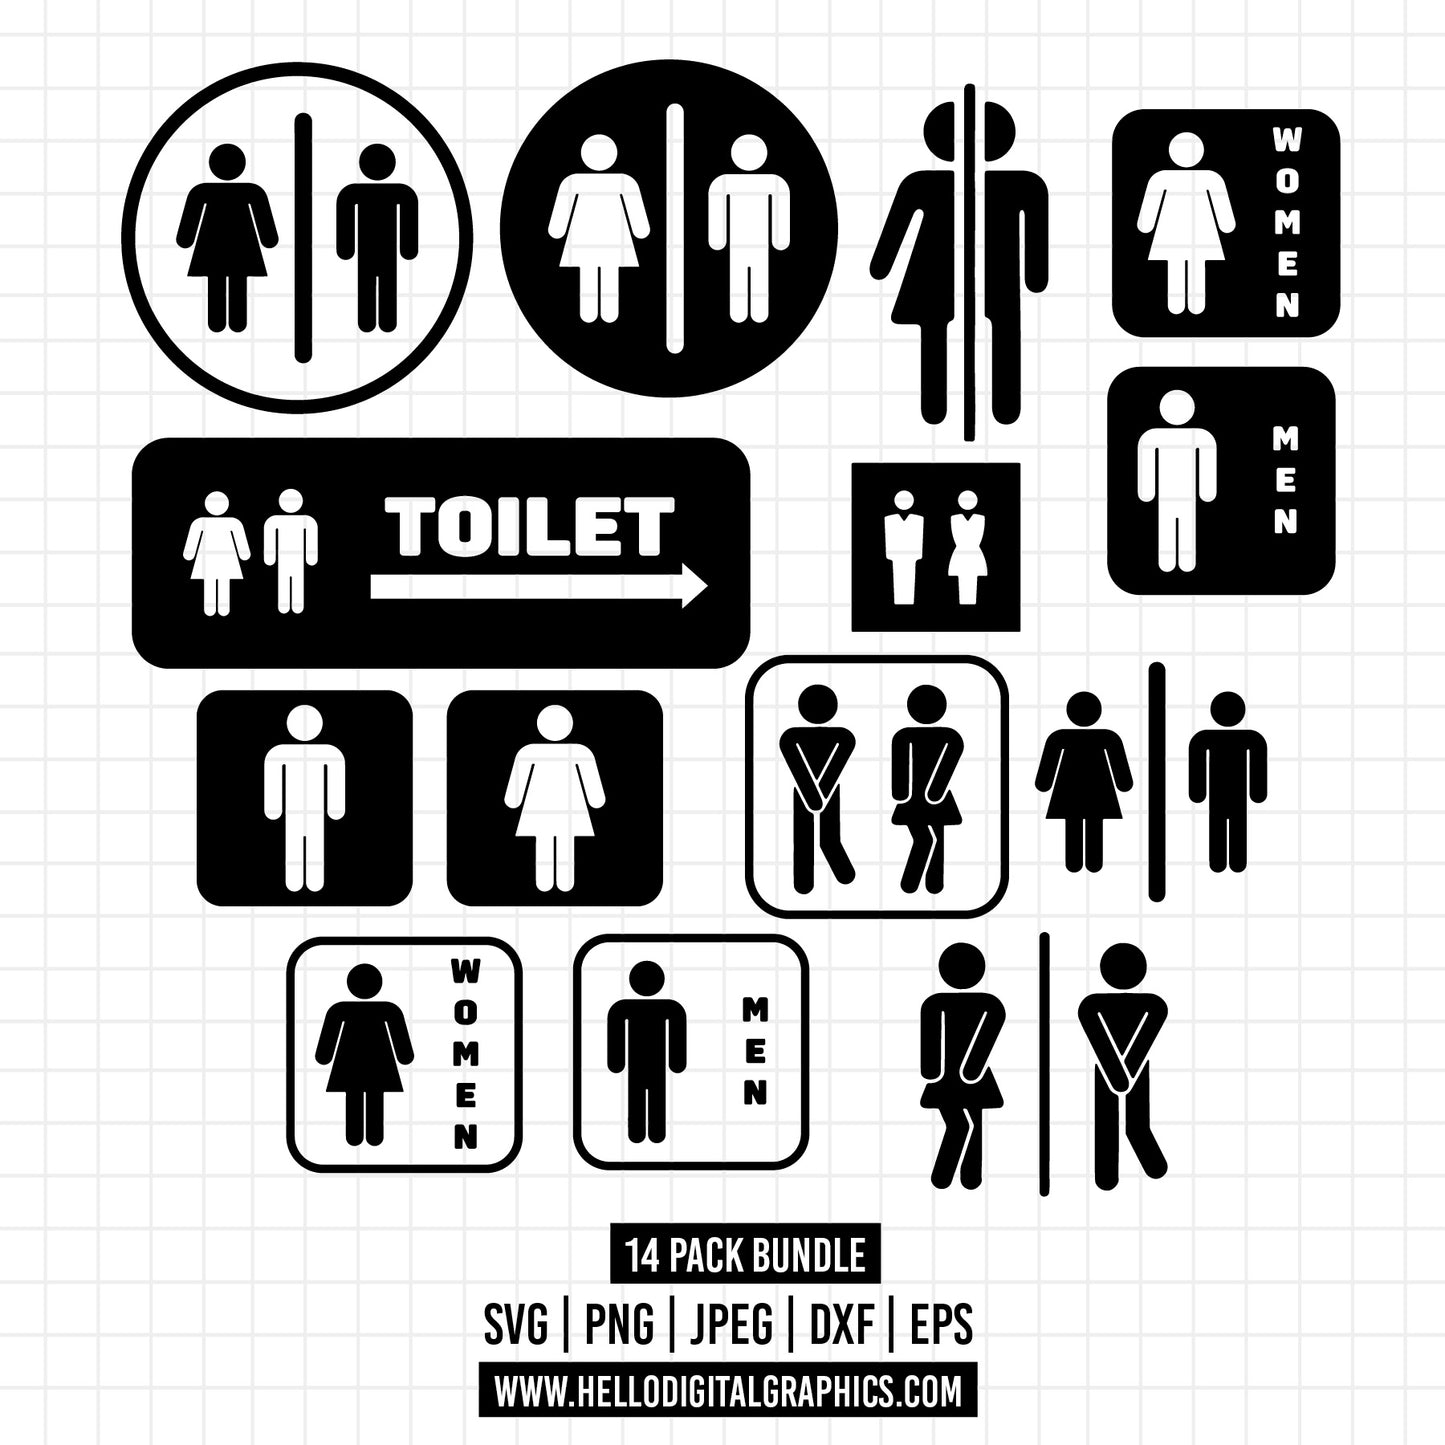 COD1369 - Bathroom Svg, Restroom Symbol svg, restroom sign svg, toilet svg, restroom icon svg, Minimal Outline Bathroom Sign svg